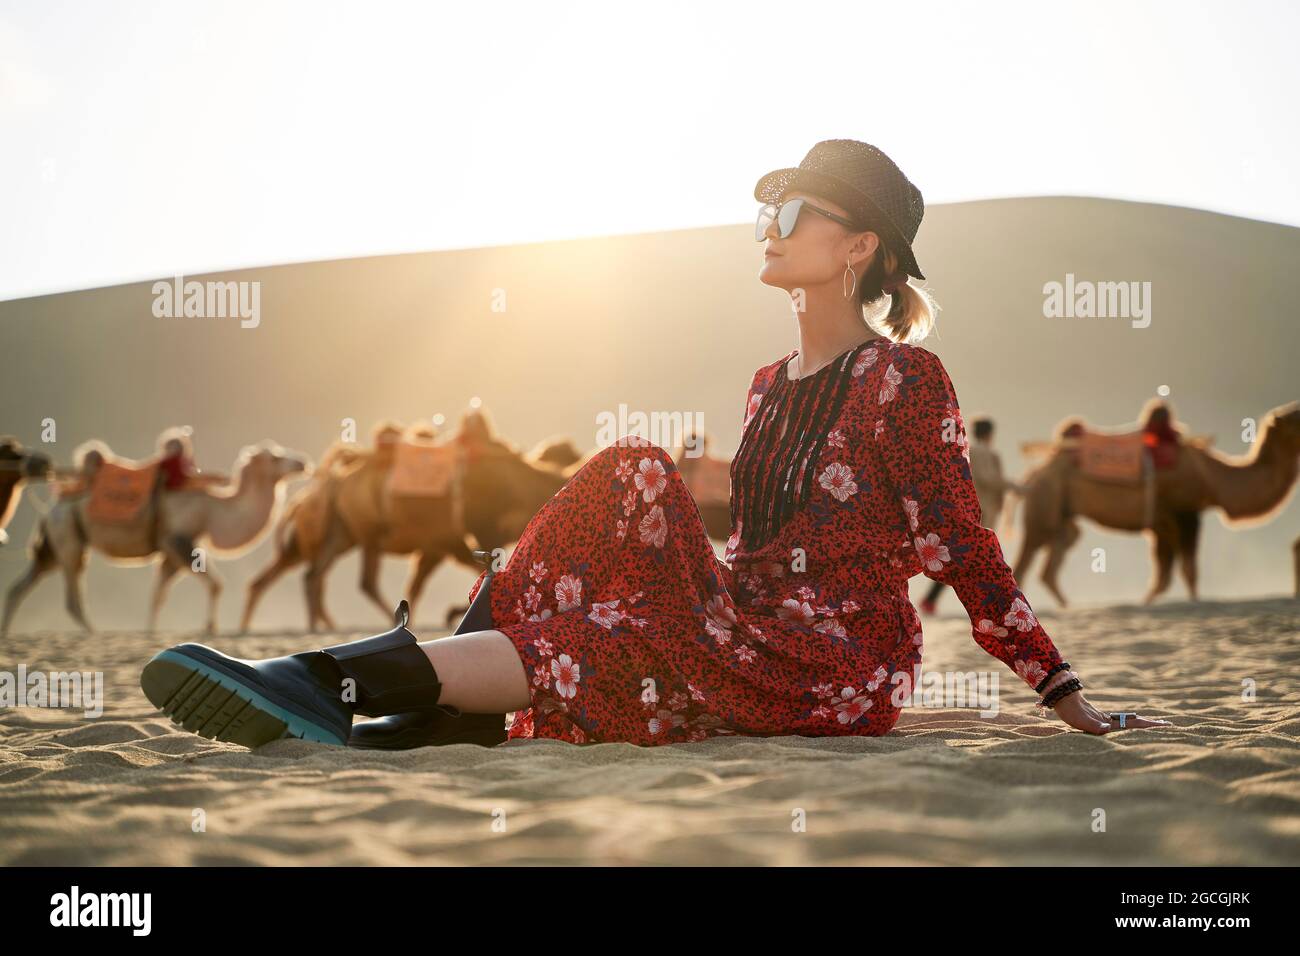 asiatische Frau in rotem Kleid sitzt in der Wüste Blick mit Karawane von Kamelen und riesige Sanddüne im Hintergrund Stockfoto